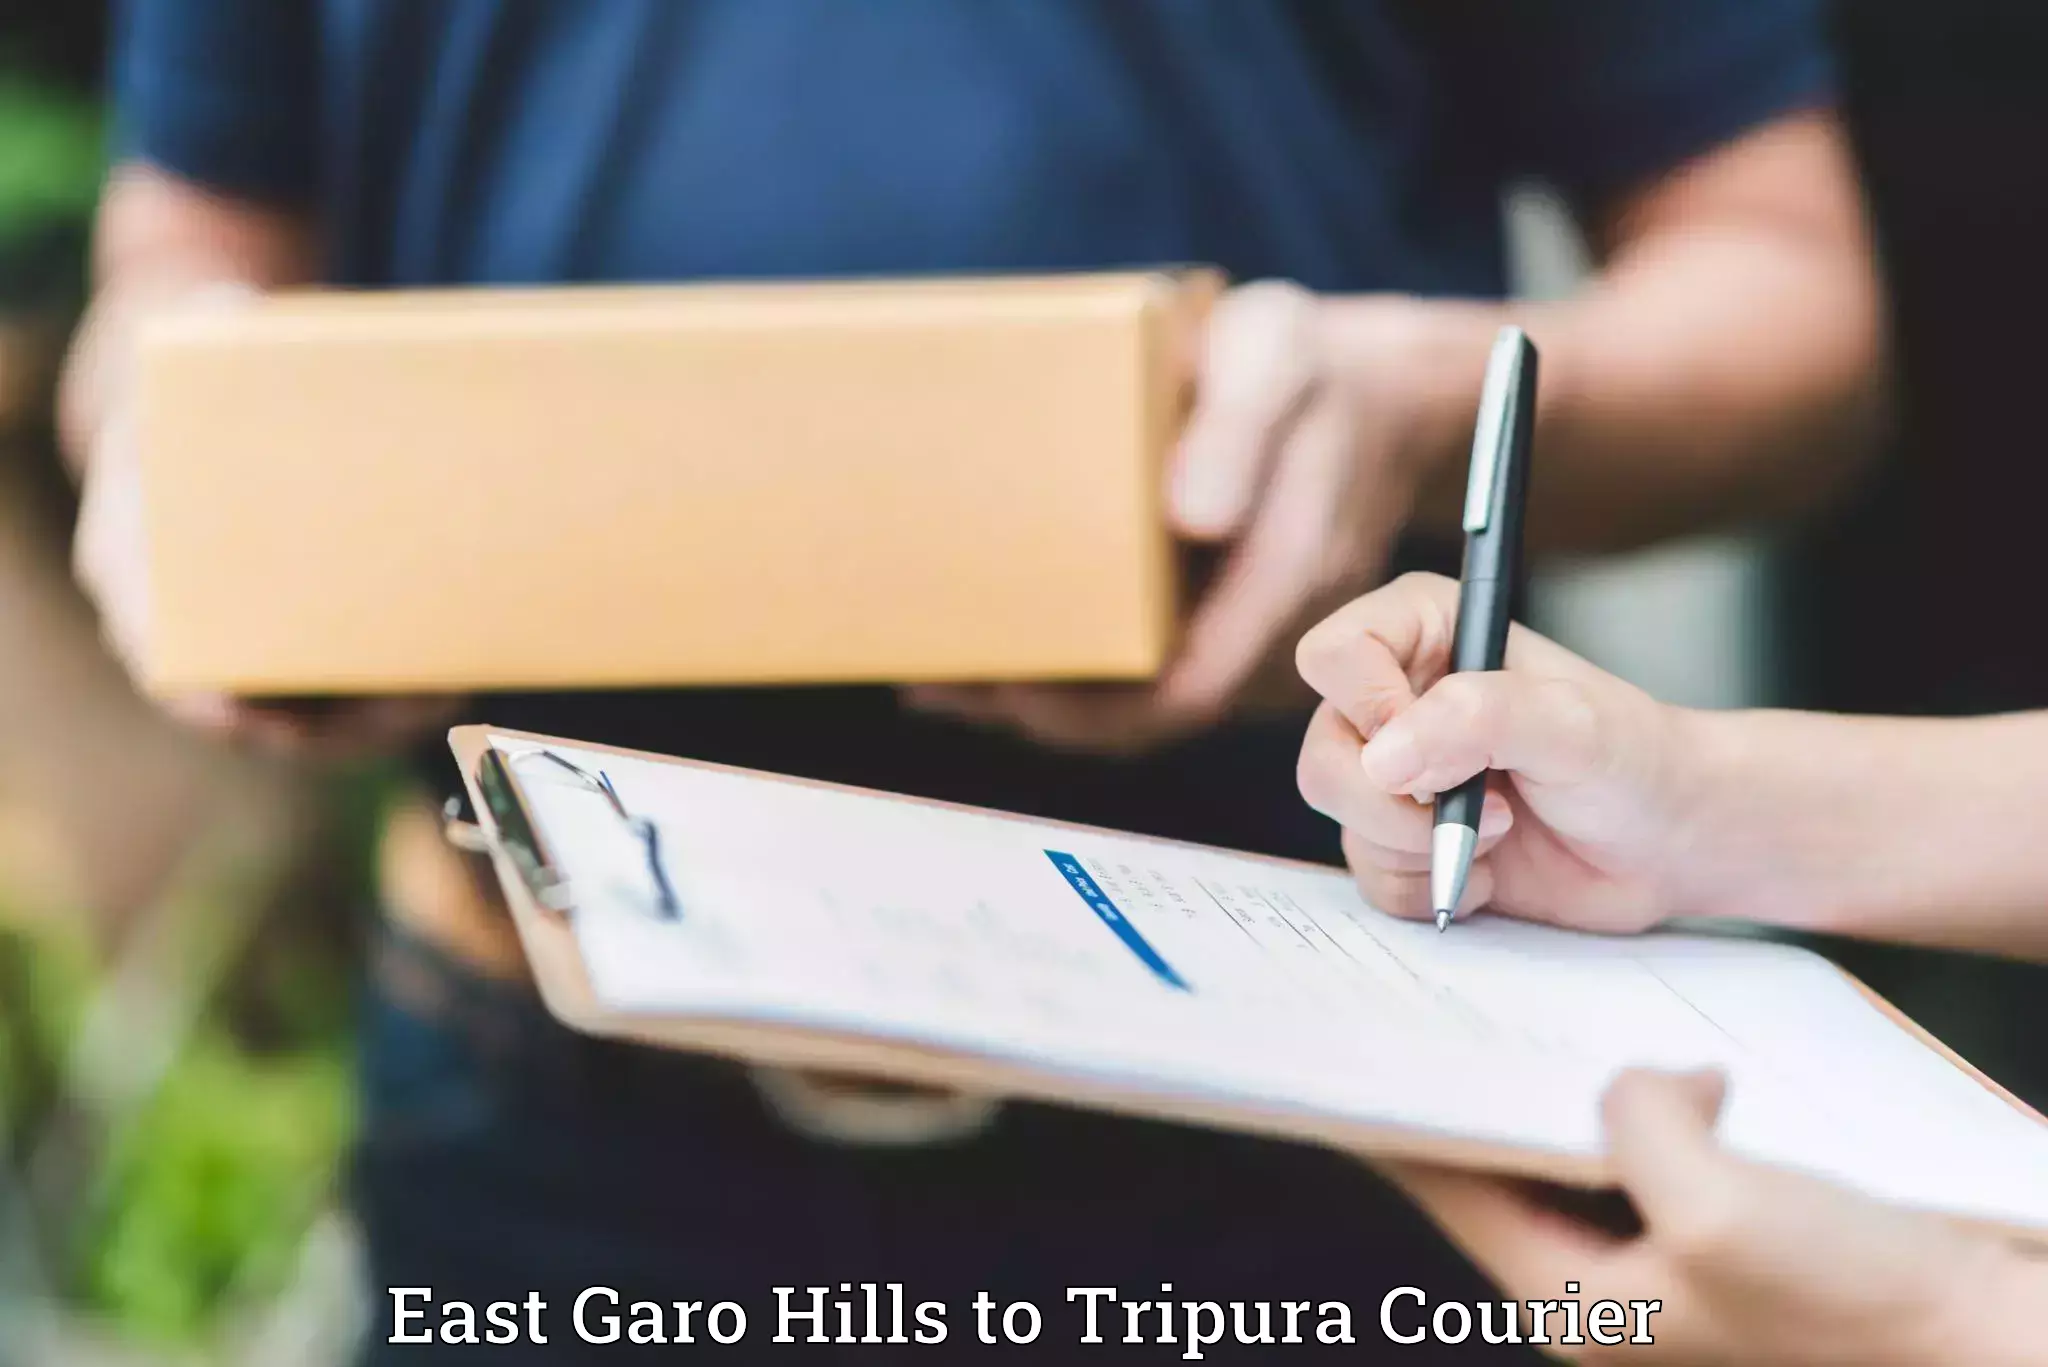 Luggage transit service East Garo Hills to Udaipur Tripura